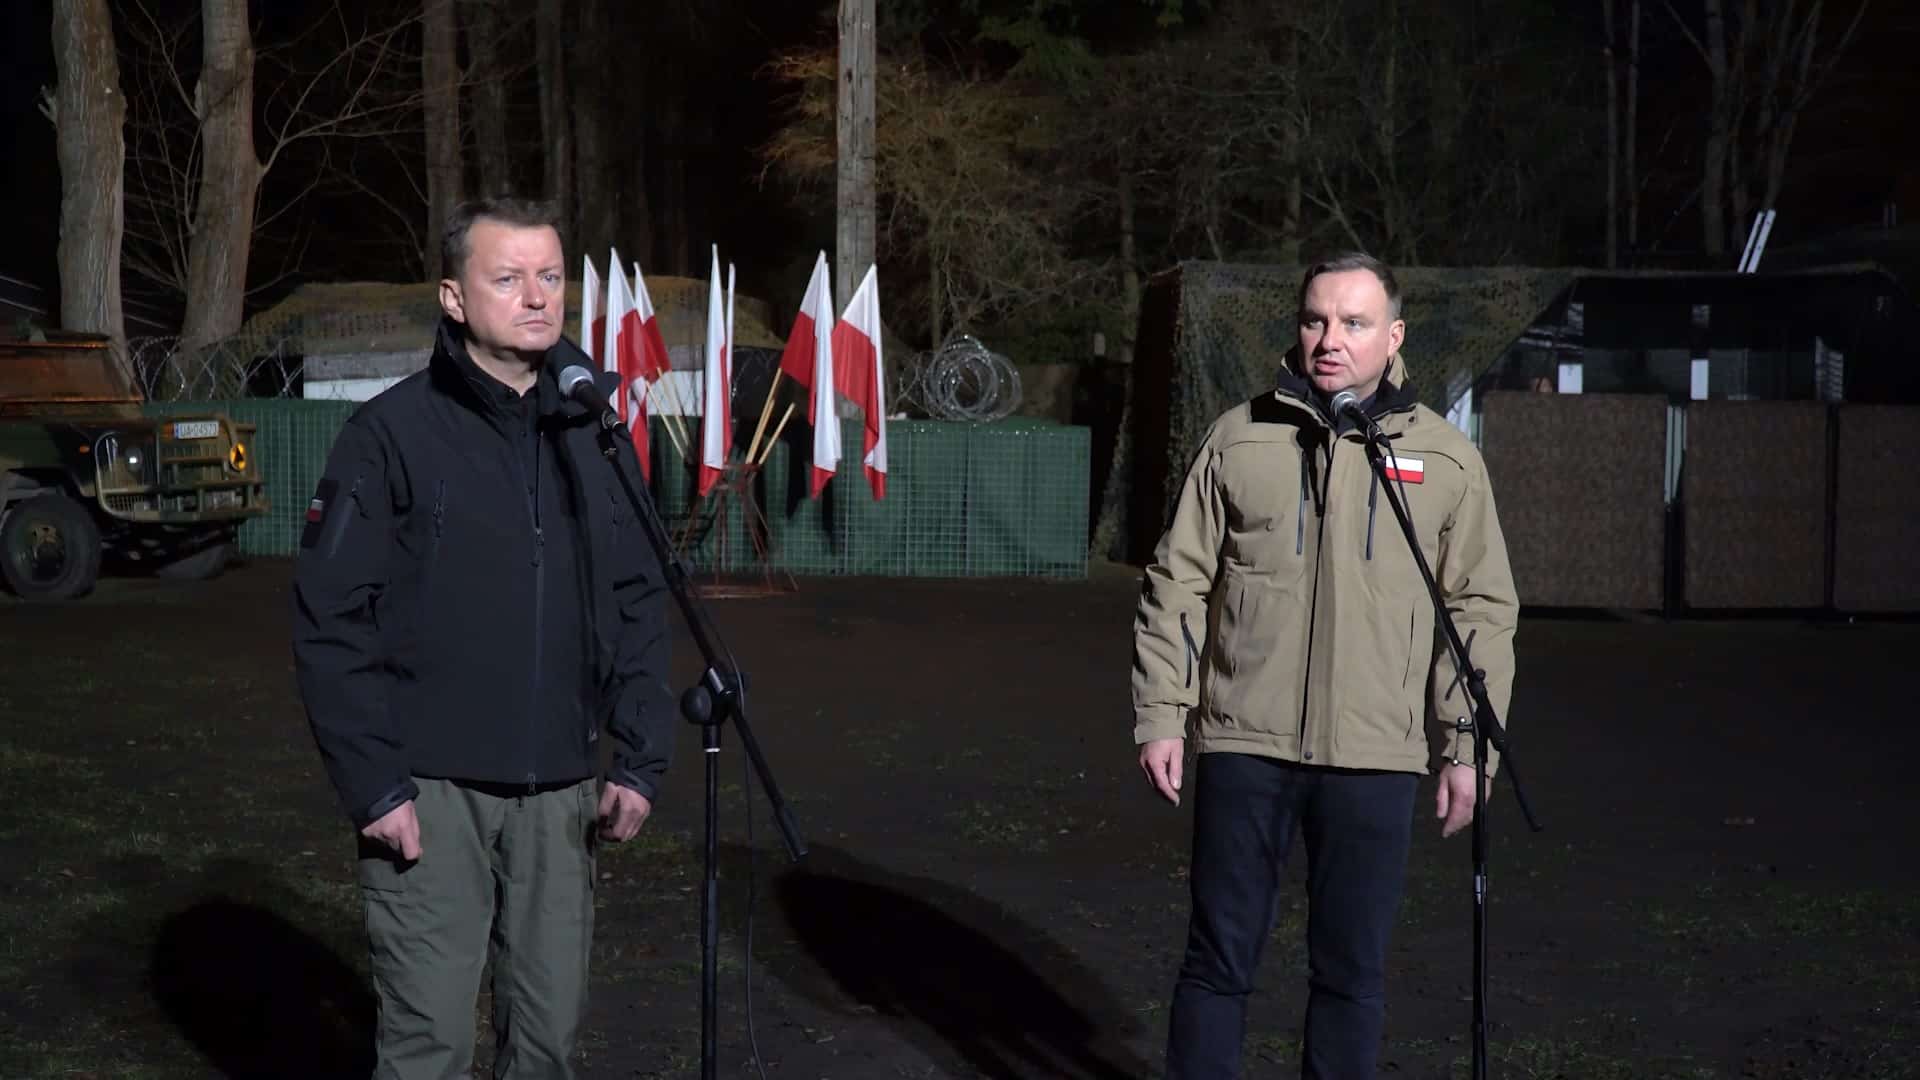 Prezydent Polski i Minister Obrony Narodowej w Olsztynie granica Wiadomości, Olsztyn, TOP, Wideo, zPAP